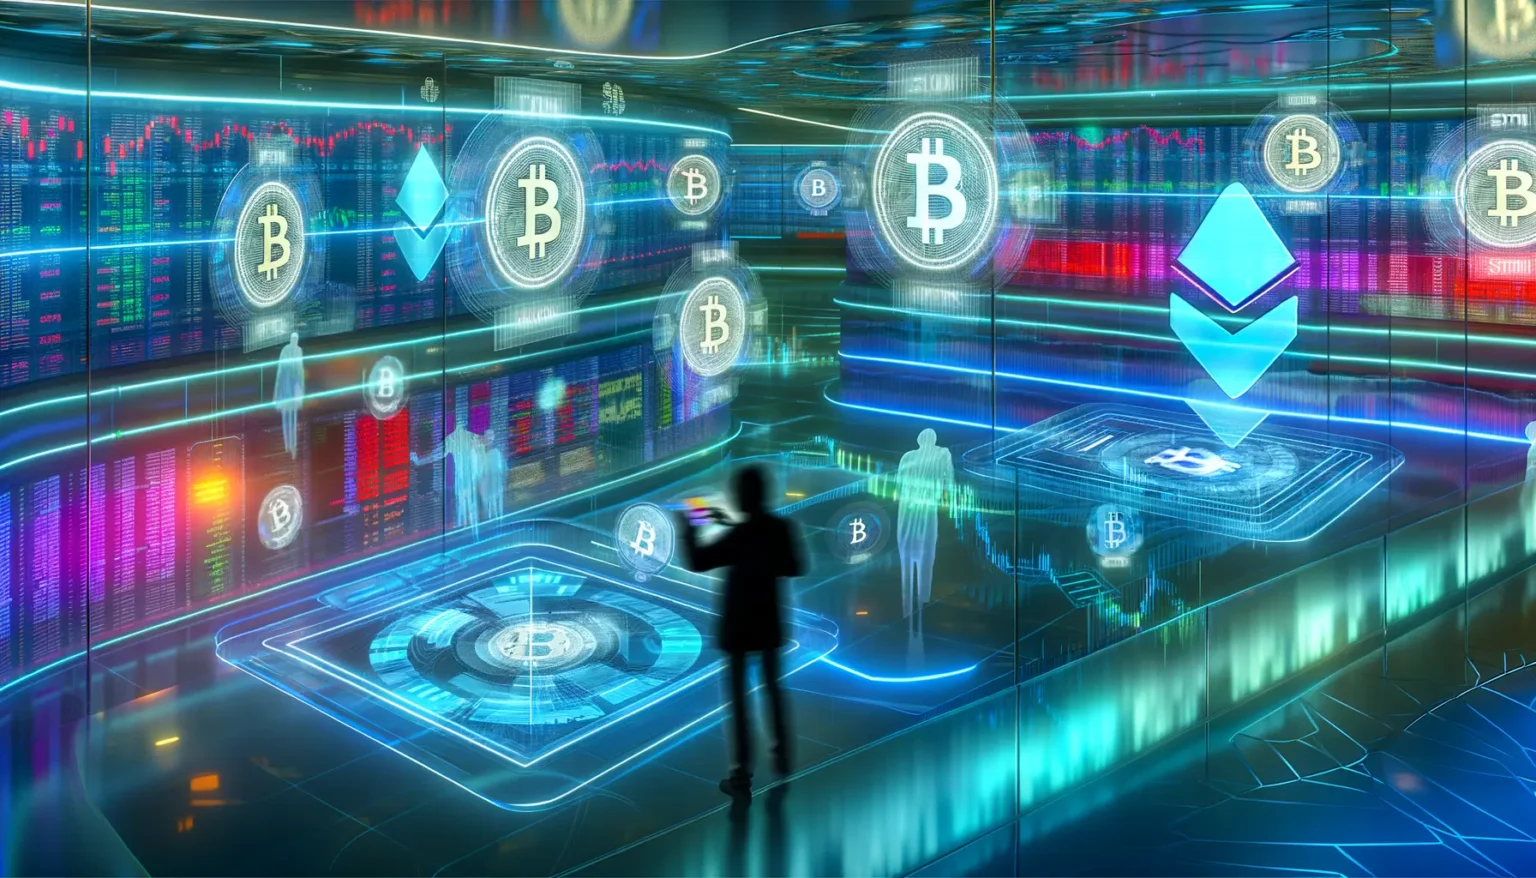 Eine Person steht in einem futuristischen Raum mit holografischen Darstellungen von Kryptowährungssymbolen wie Bitcoin und Ethereum. Im Hintergrund sind digitale Börseninformationen und Diagramme zu sehen.